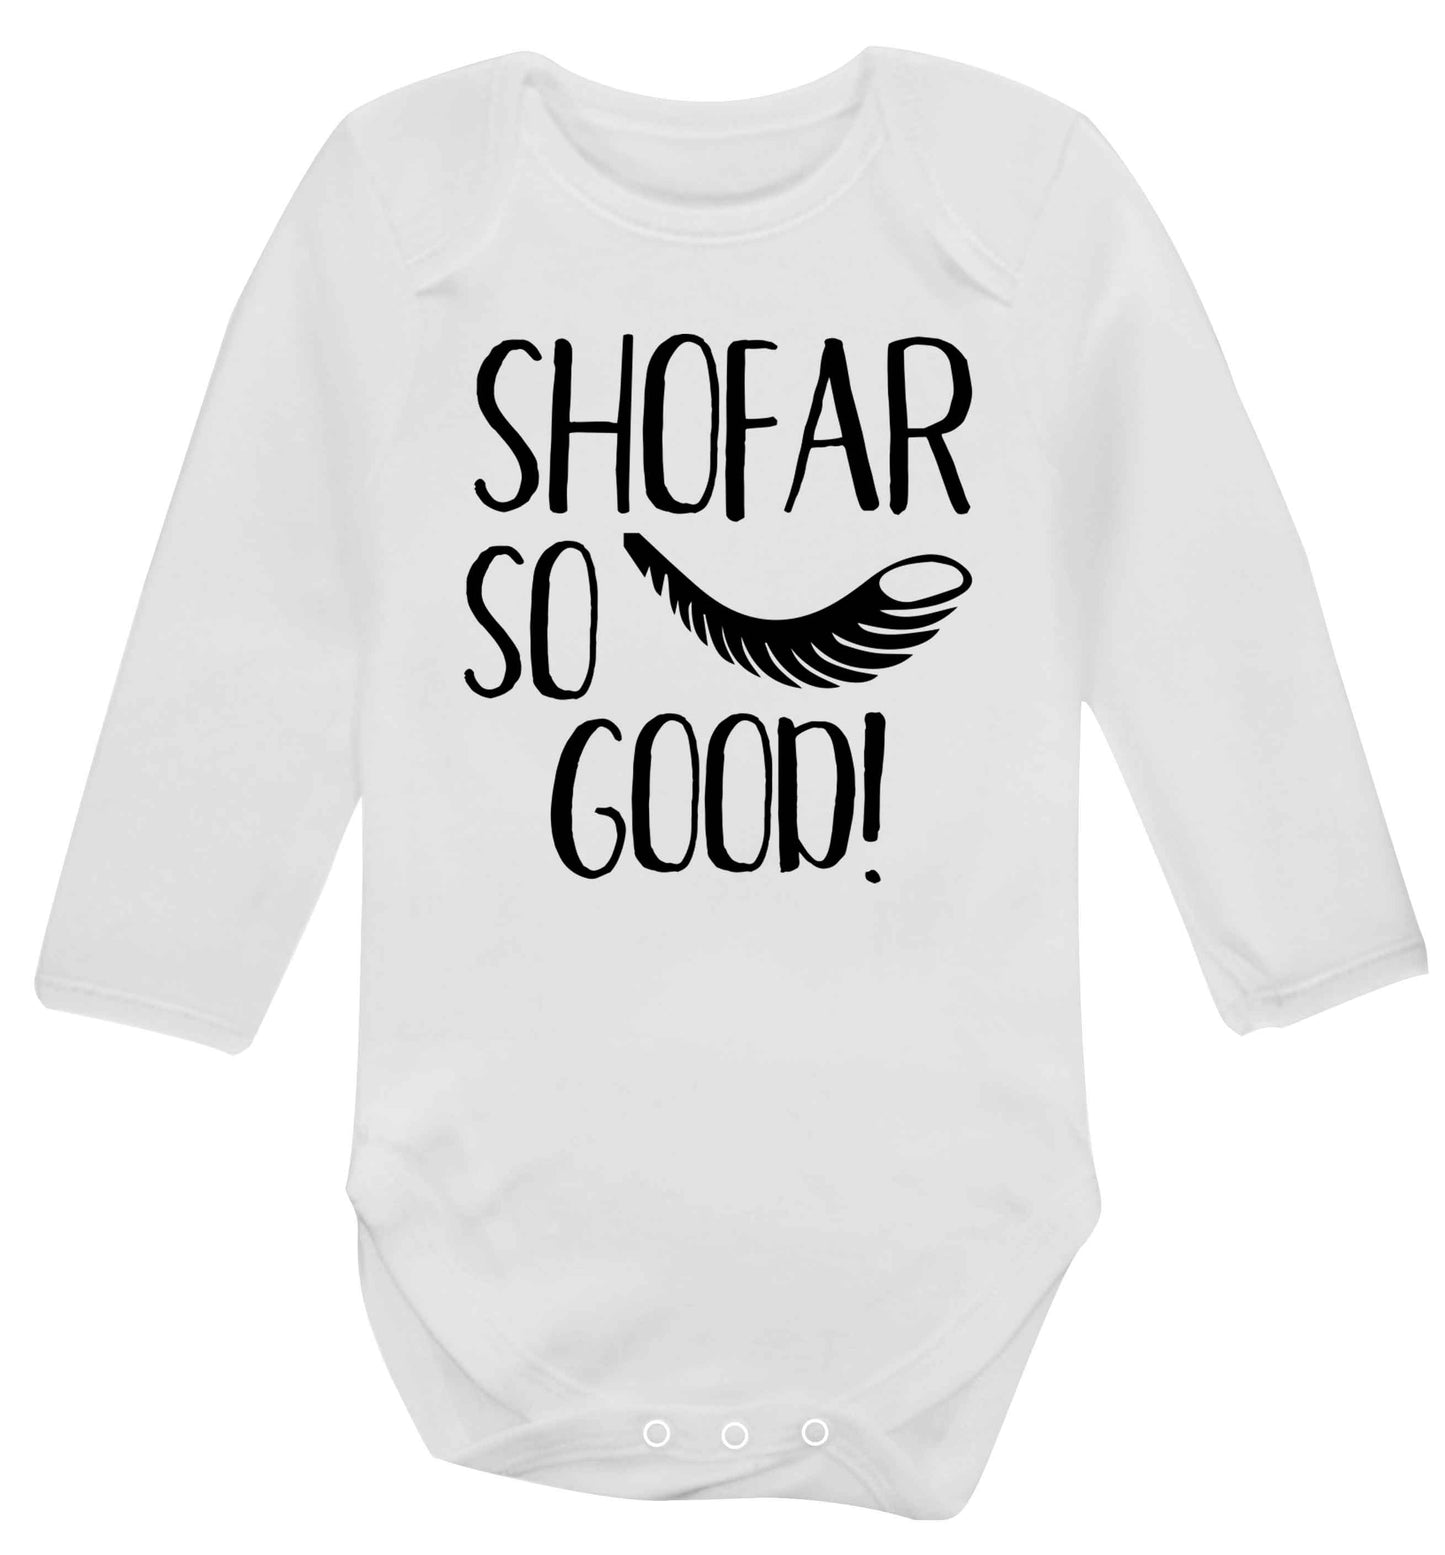 Shofar so good! Baby Vest long sleeved white 6-12 months